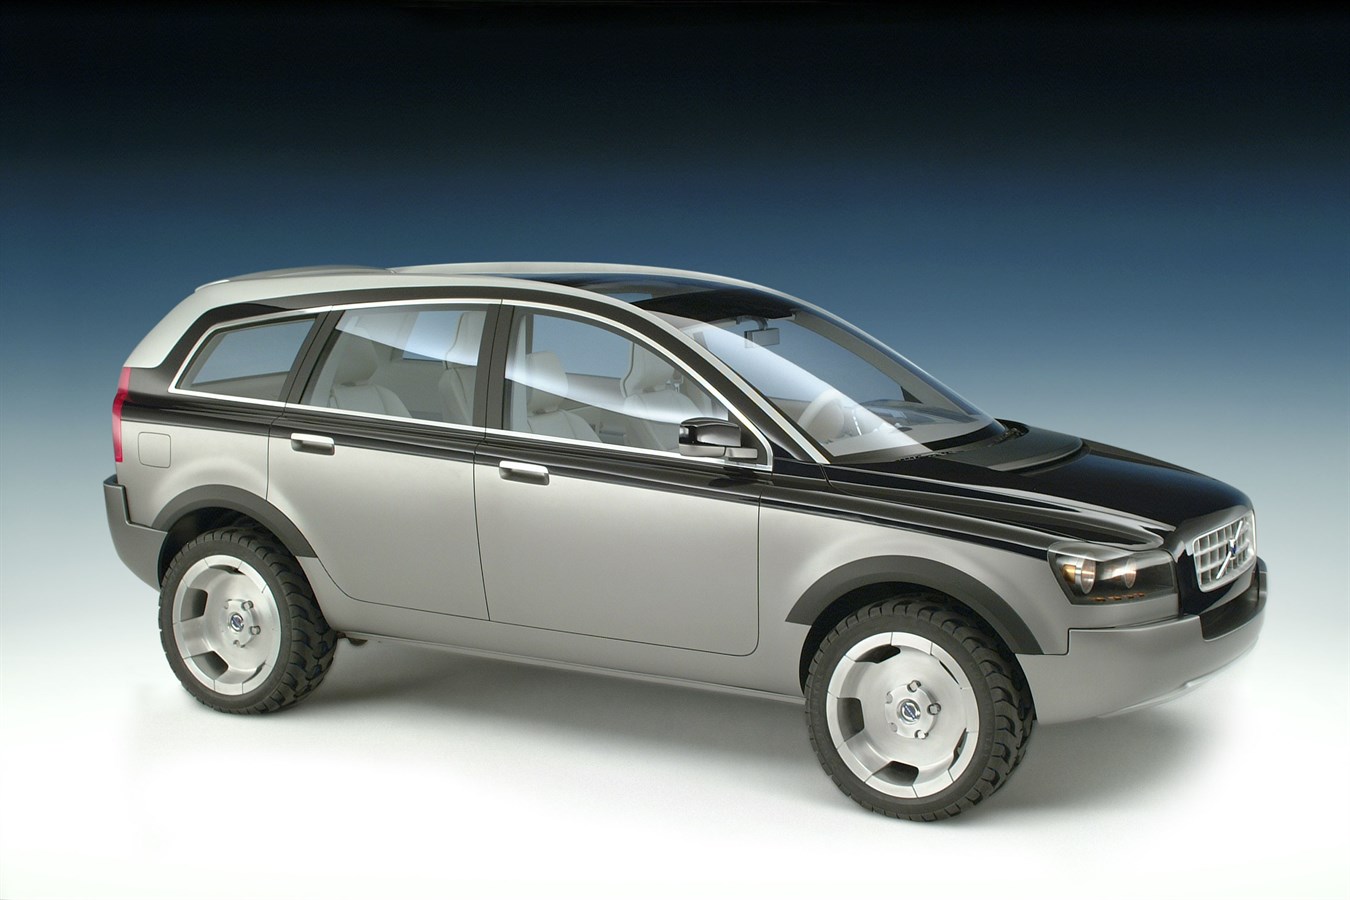 Il prototipo Volvo ACC (Adventure Concept Car), 2001. Il prototipo ACC venne esposto per la prima volta presso il salone dell'auto di Ginevra, circa due anni prima dell'introduzione sul mercato del SUV Volvo XC90; non venne tenuto segreto il fatto che si trattava di un'anteprima di ulteriori evoluzioni future.